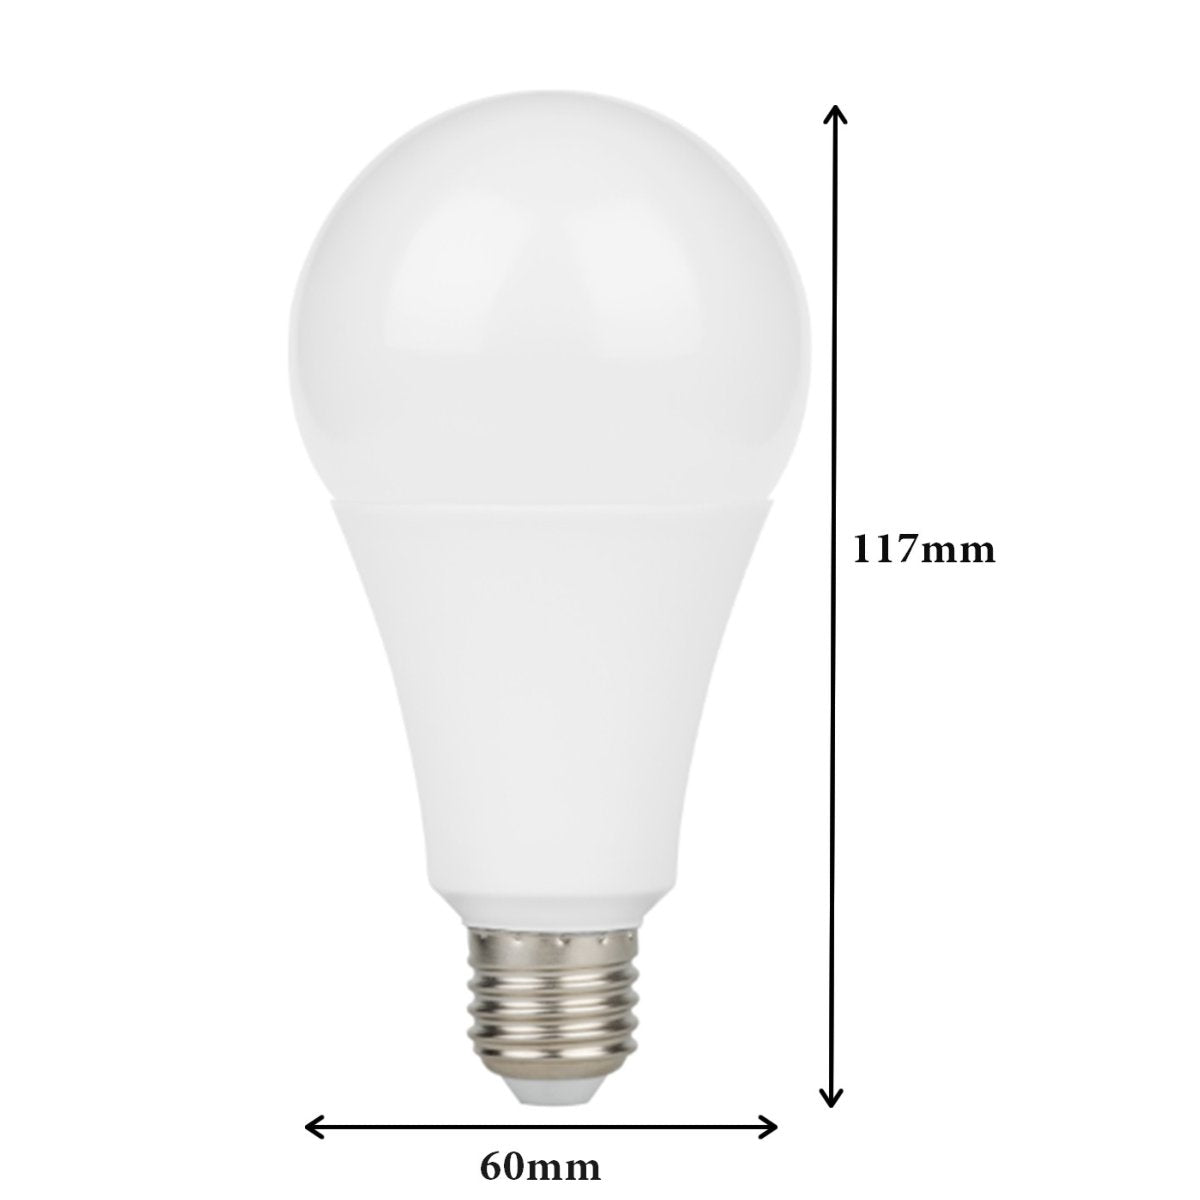 Ampoule LED E27 13W A60 220V 230° (Pack de 10) - Silamp France